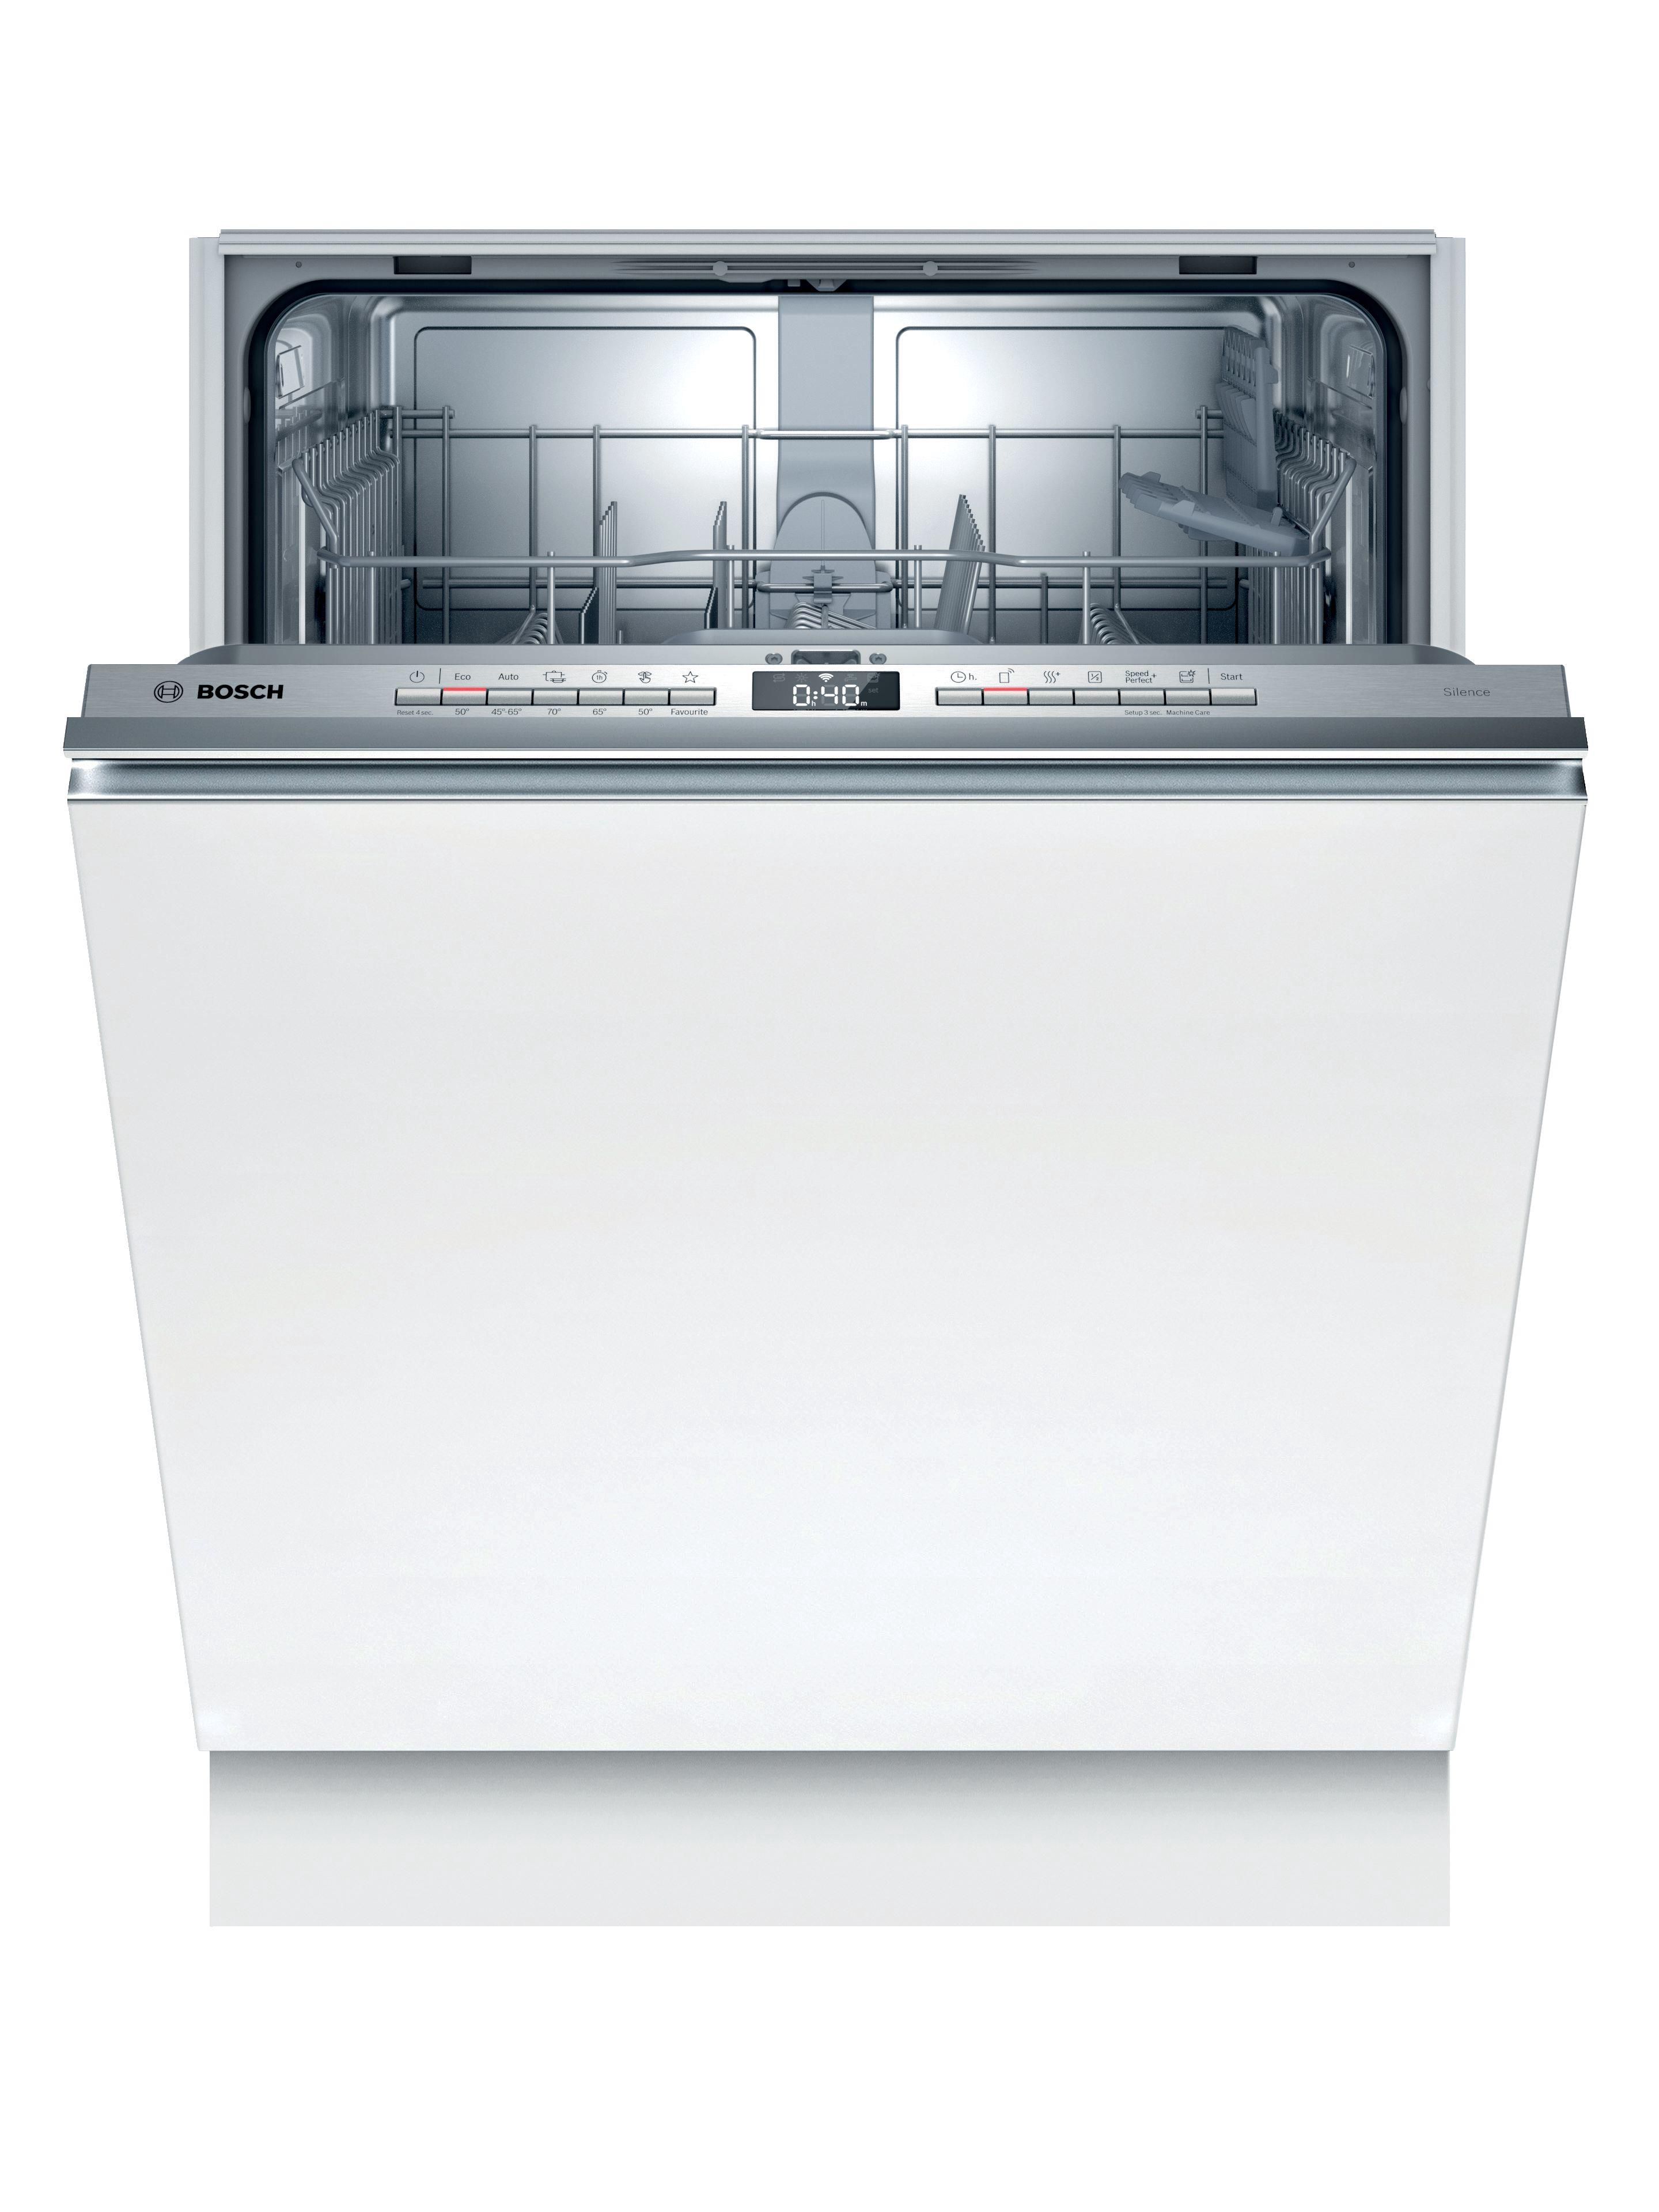 Встраиваемая посудомоечная машина черная. Bosch spv6hmx1mr. Встраиваемая посудомоечная машина Bosch spv2ikx10e. Посудомоечная машина Bosch spv2imy2er. Встраиваемая посудомоечная машина 60 см Bosch serie|4 sgv4hmx3fr.